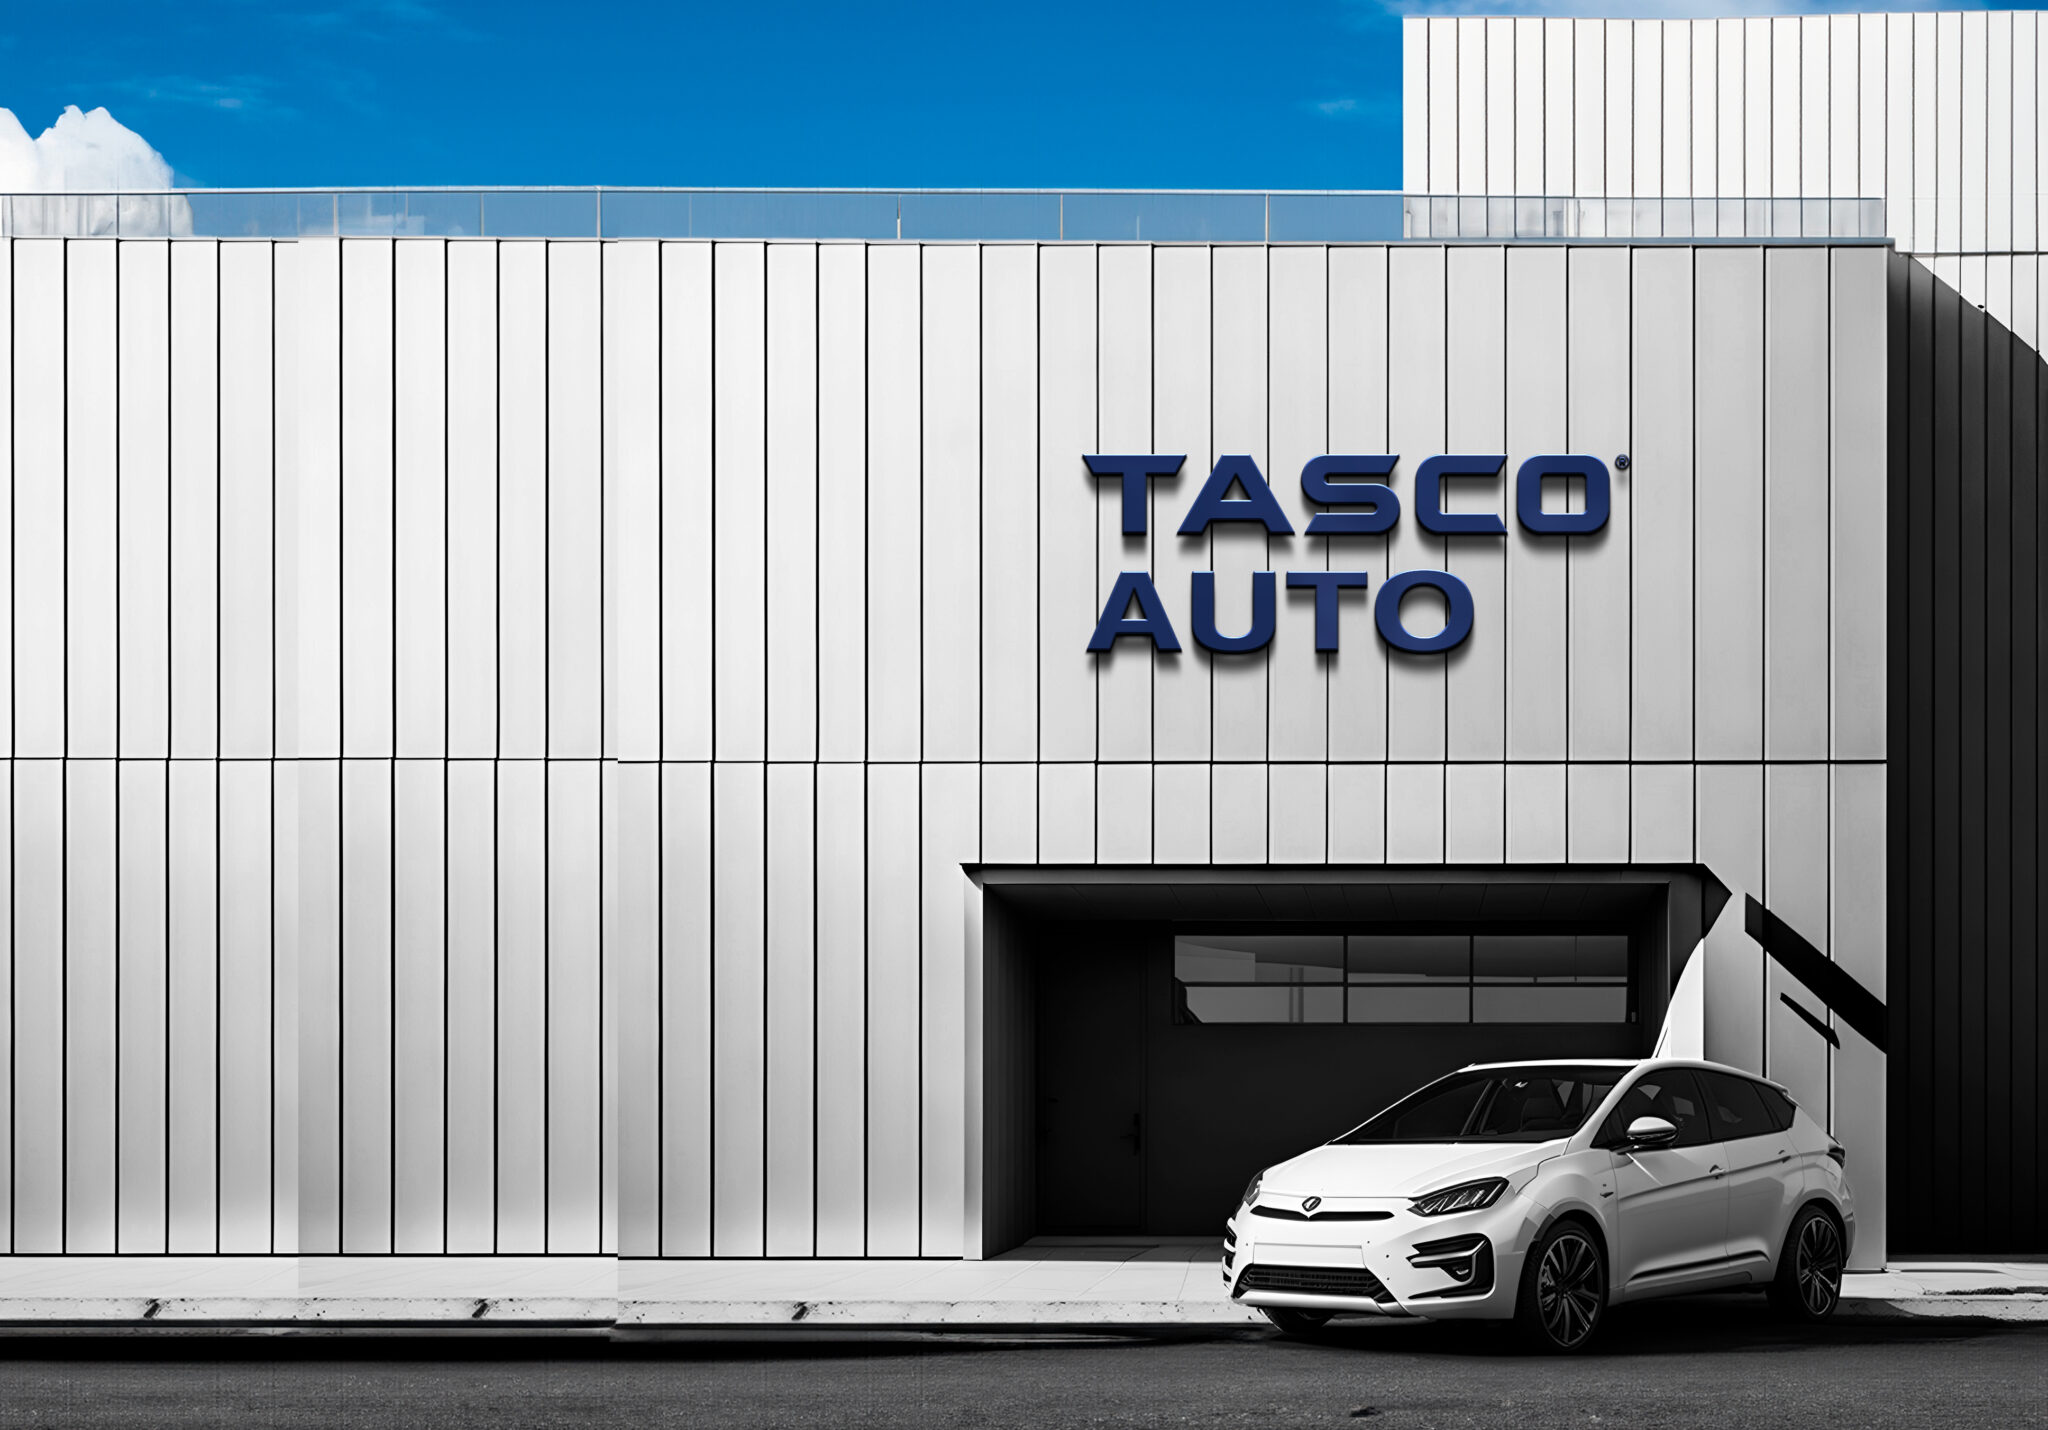 Tasco Auto trở thành công ty con, tài sản của Tasco phình to- Ảnh 1.